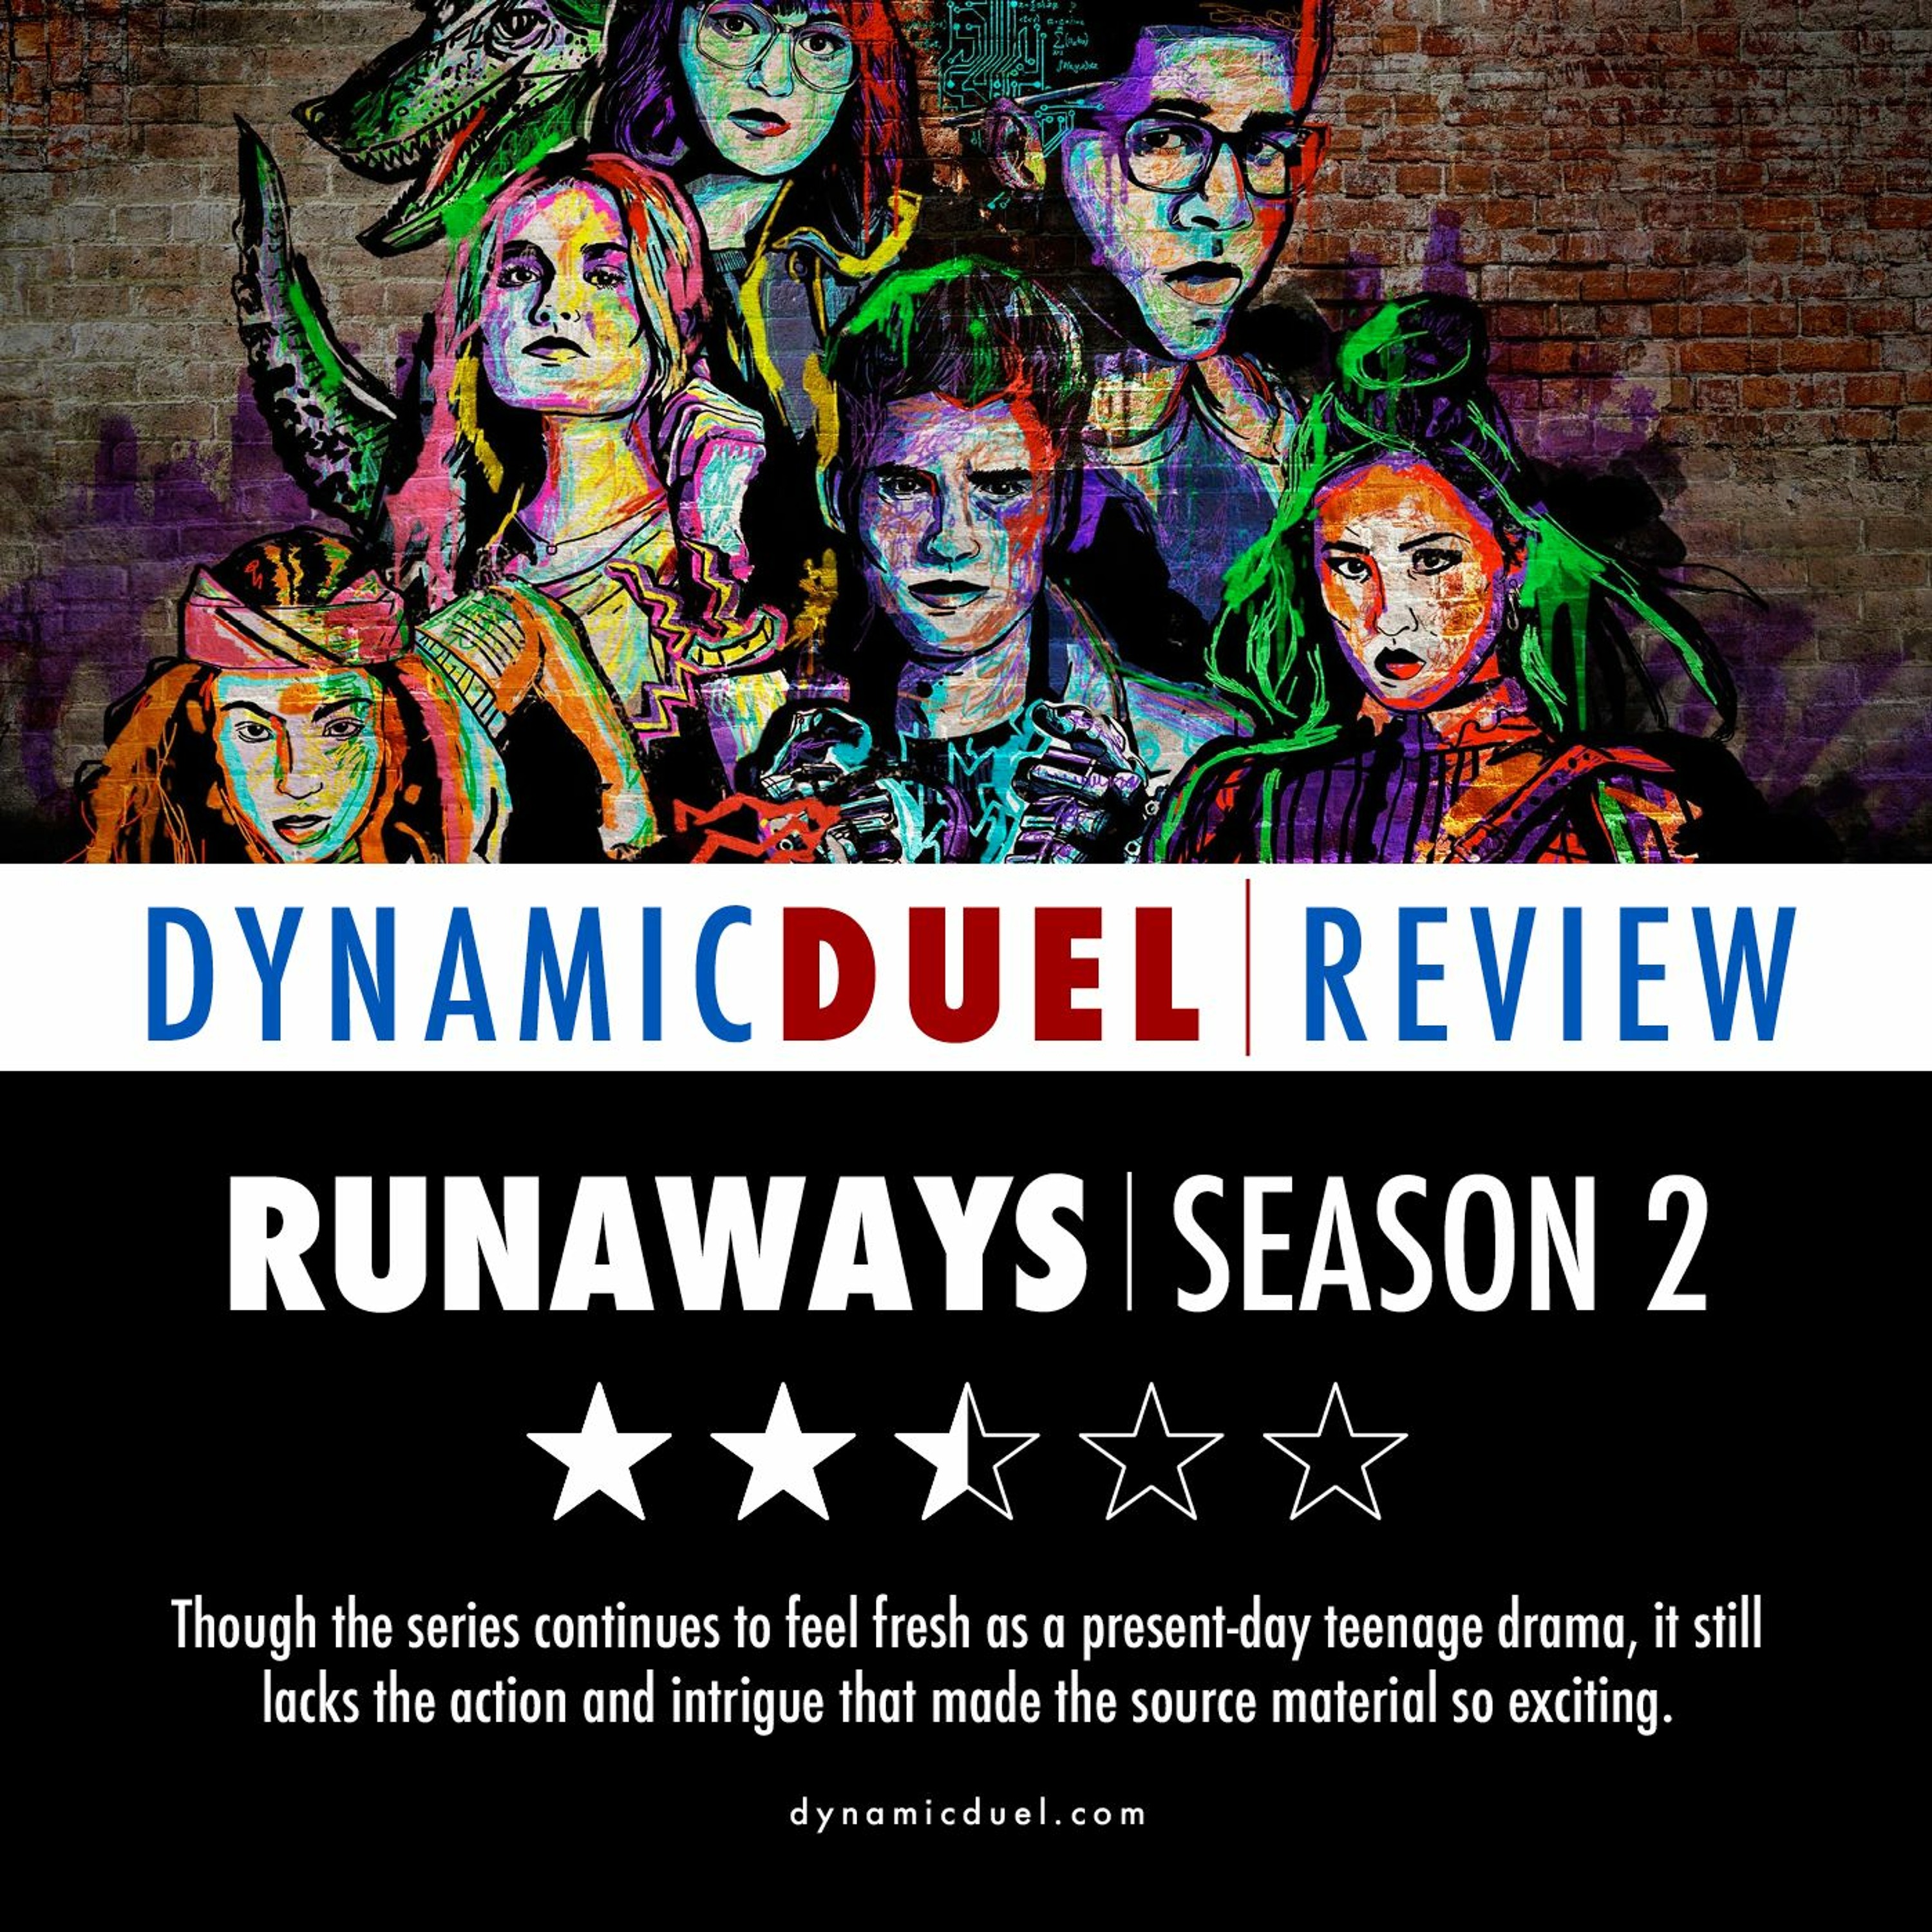 Runaways Season 2 Review